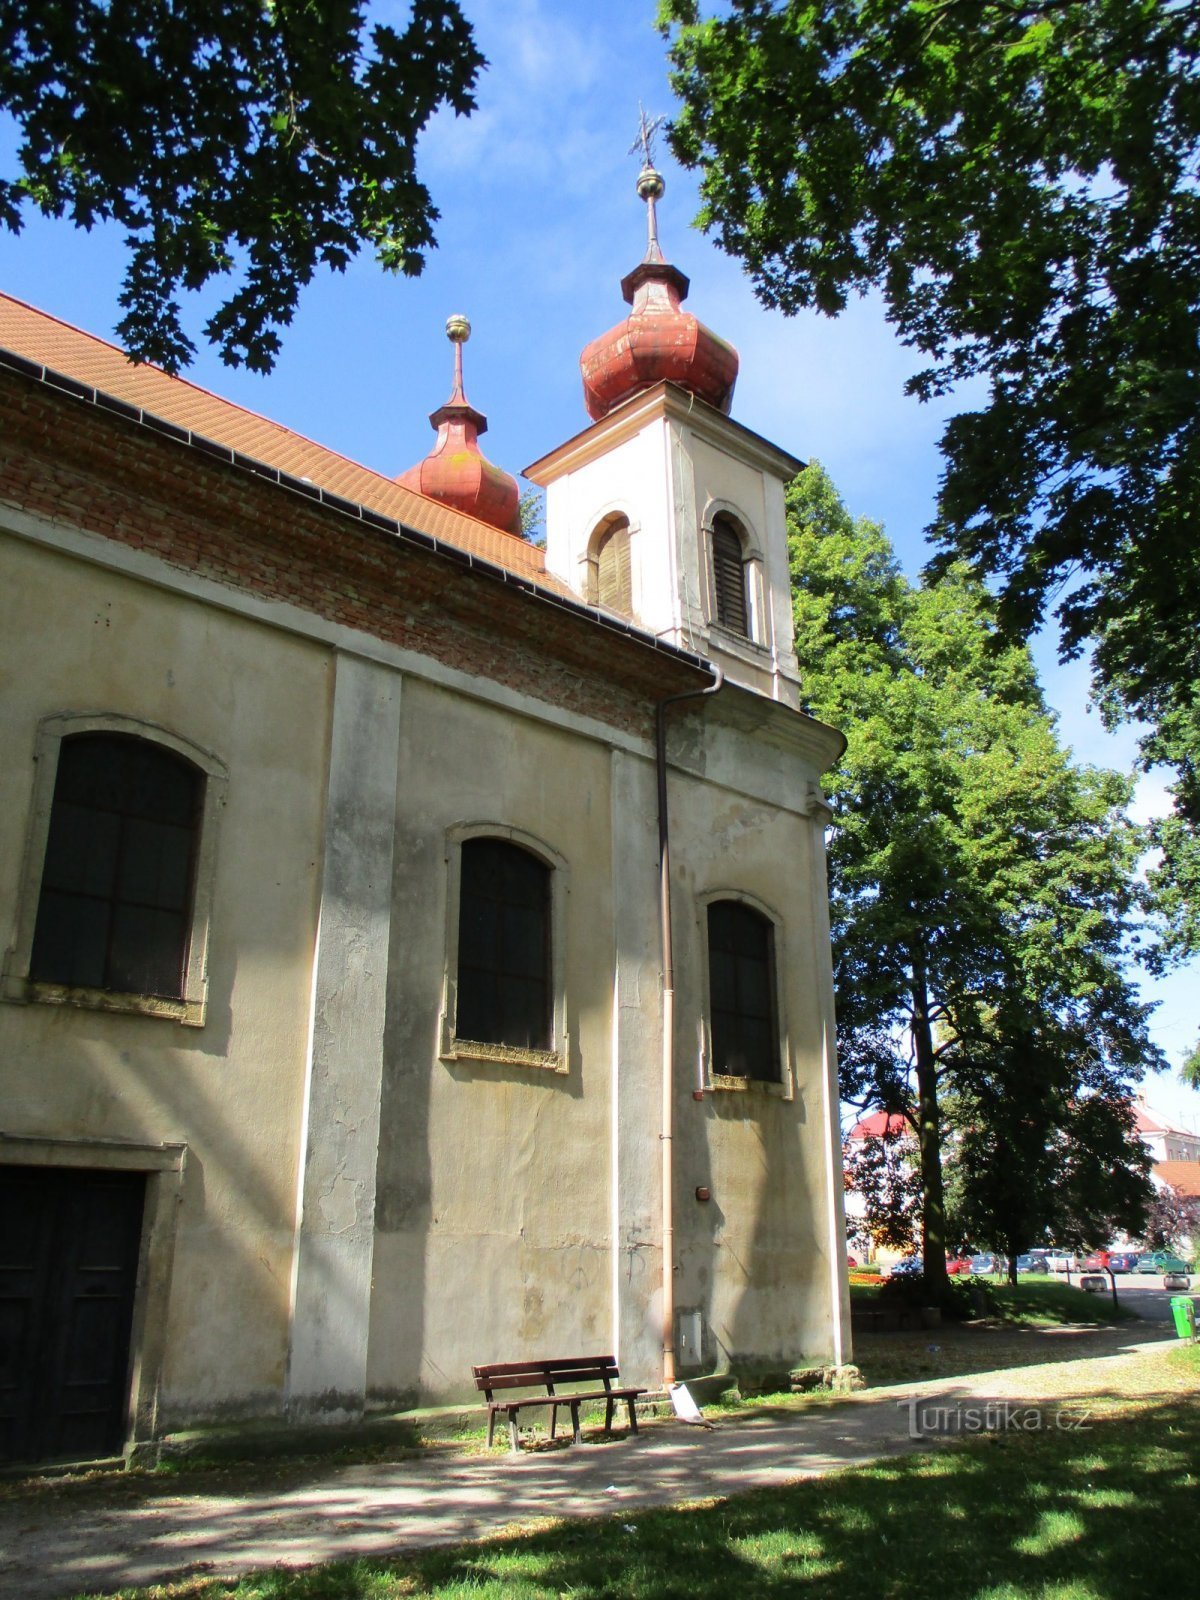 Nhà thờ Chúa Ba Ngôi (Nový Bydžov, ngày 5.7.2020 tháng XNUMX năm XNUMX)